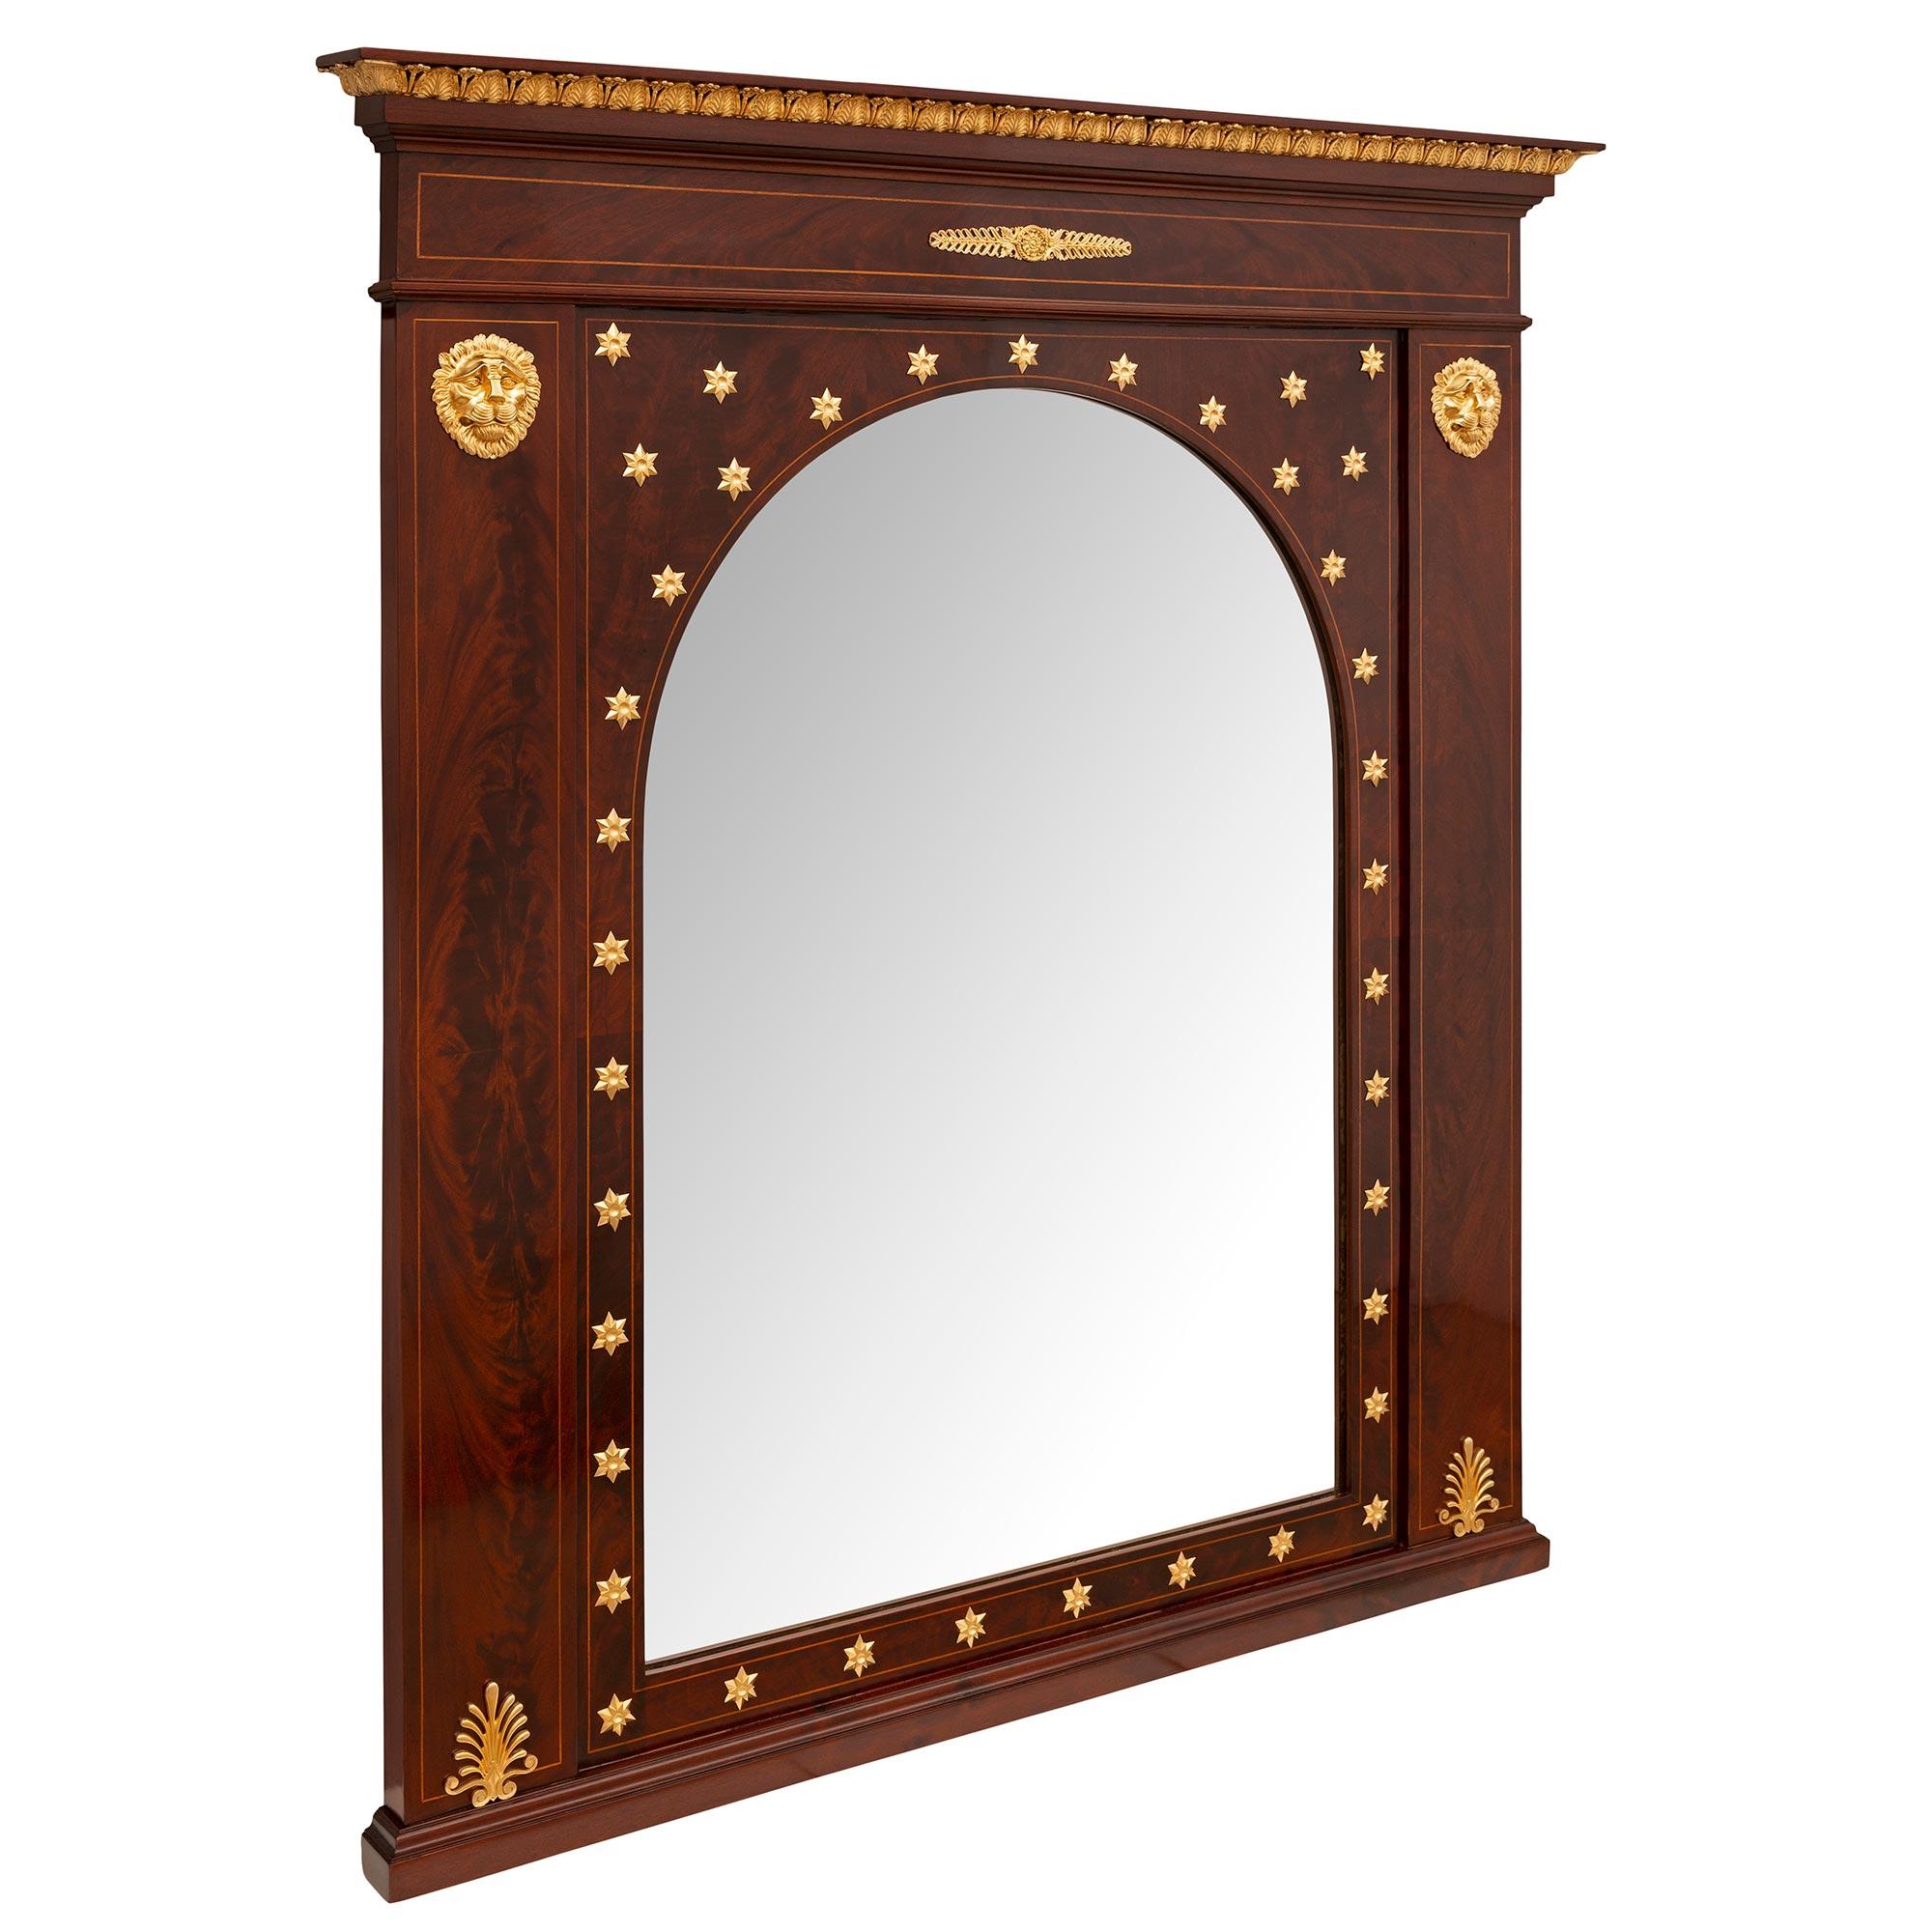 Ein beeindruckender und einzigartiger französischer Empire-Spiegel aus dem 19. Jahrhundert aus Mahagoni und Ormolu. Der Spiegel wird von einem geraden Sockel mit einem fein gesprenkelten Muster getragen. Die originelle zentrale Spiegelplatte zeigt